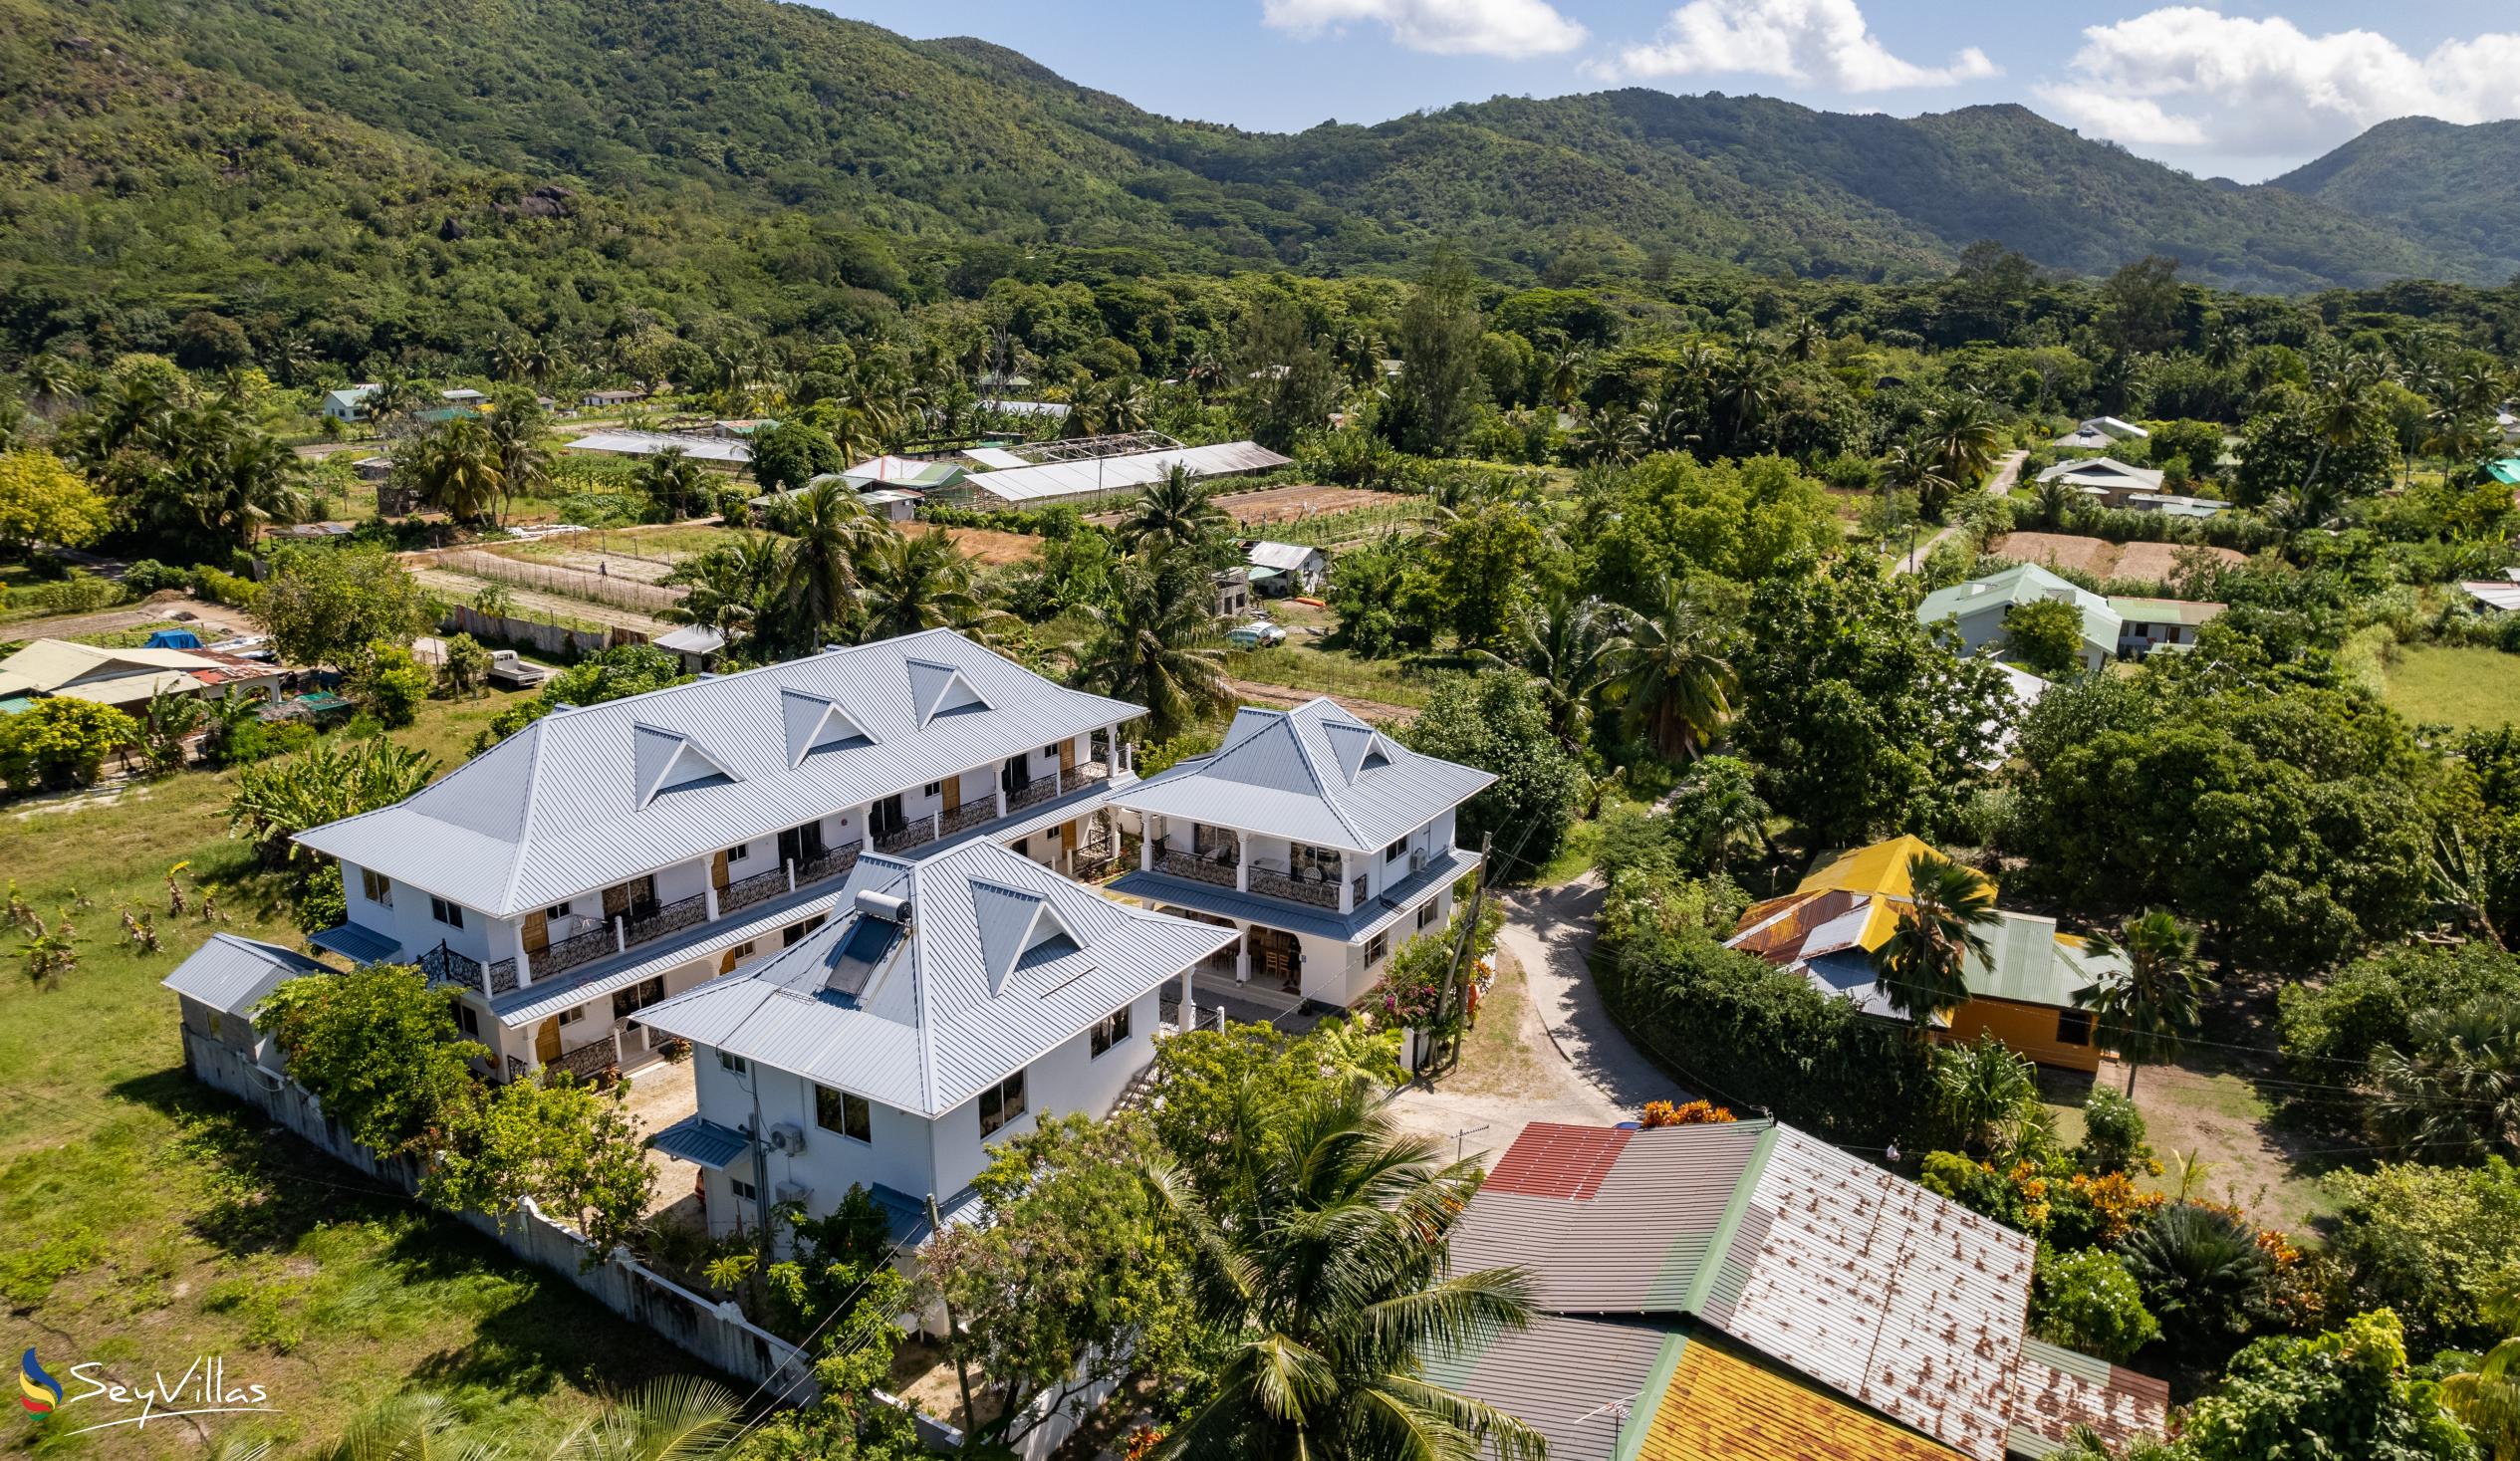 Foto 16: Casadani Luxury Guest House - Aussenbereich - Praslin (Seychellen)